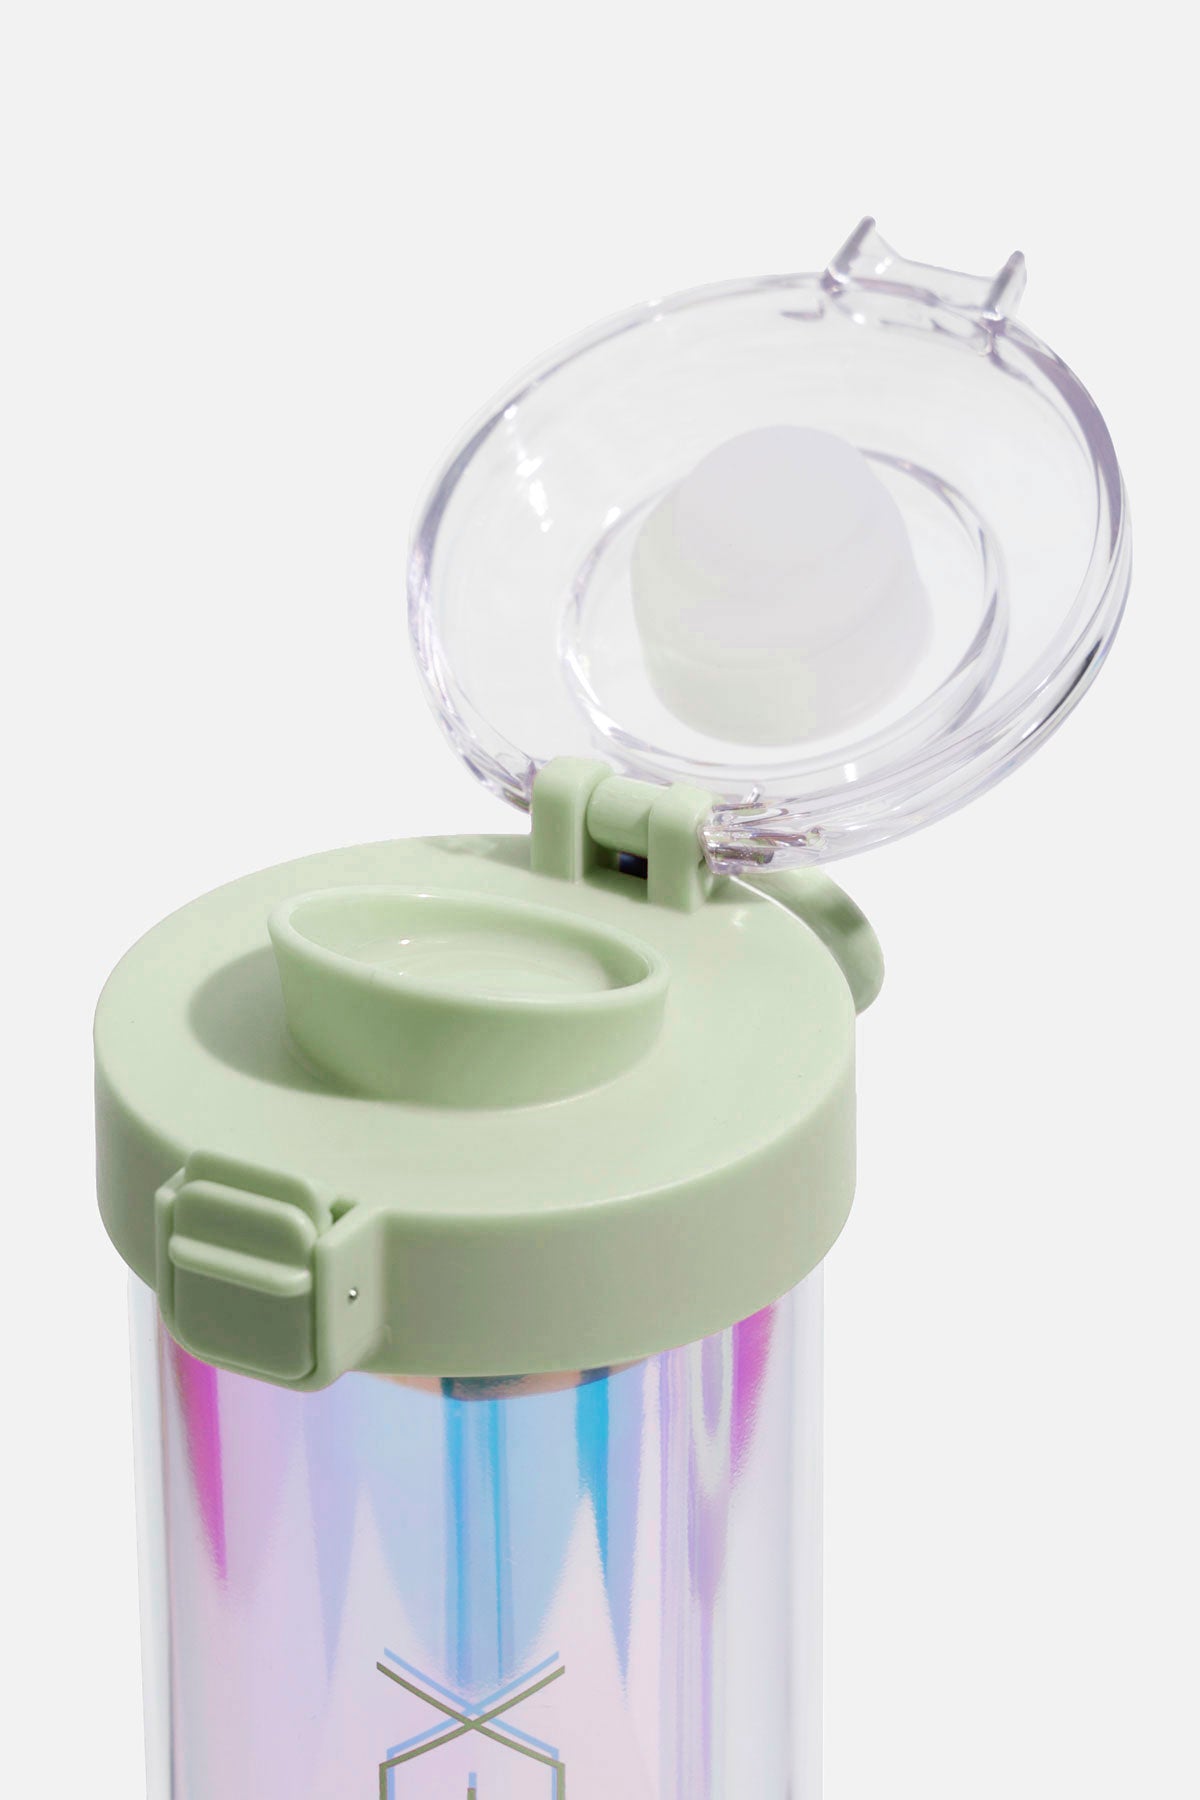 Linbit Plastic Shaker Bottle - 16 OZ. - Brilliant Promos - Be